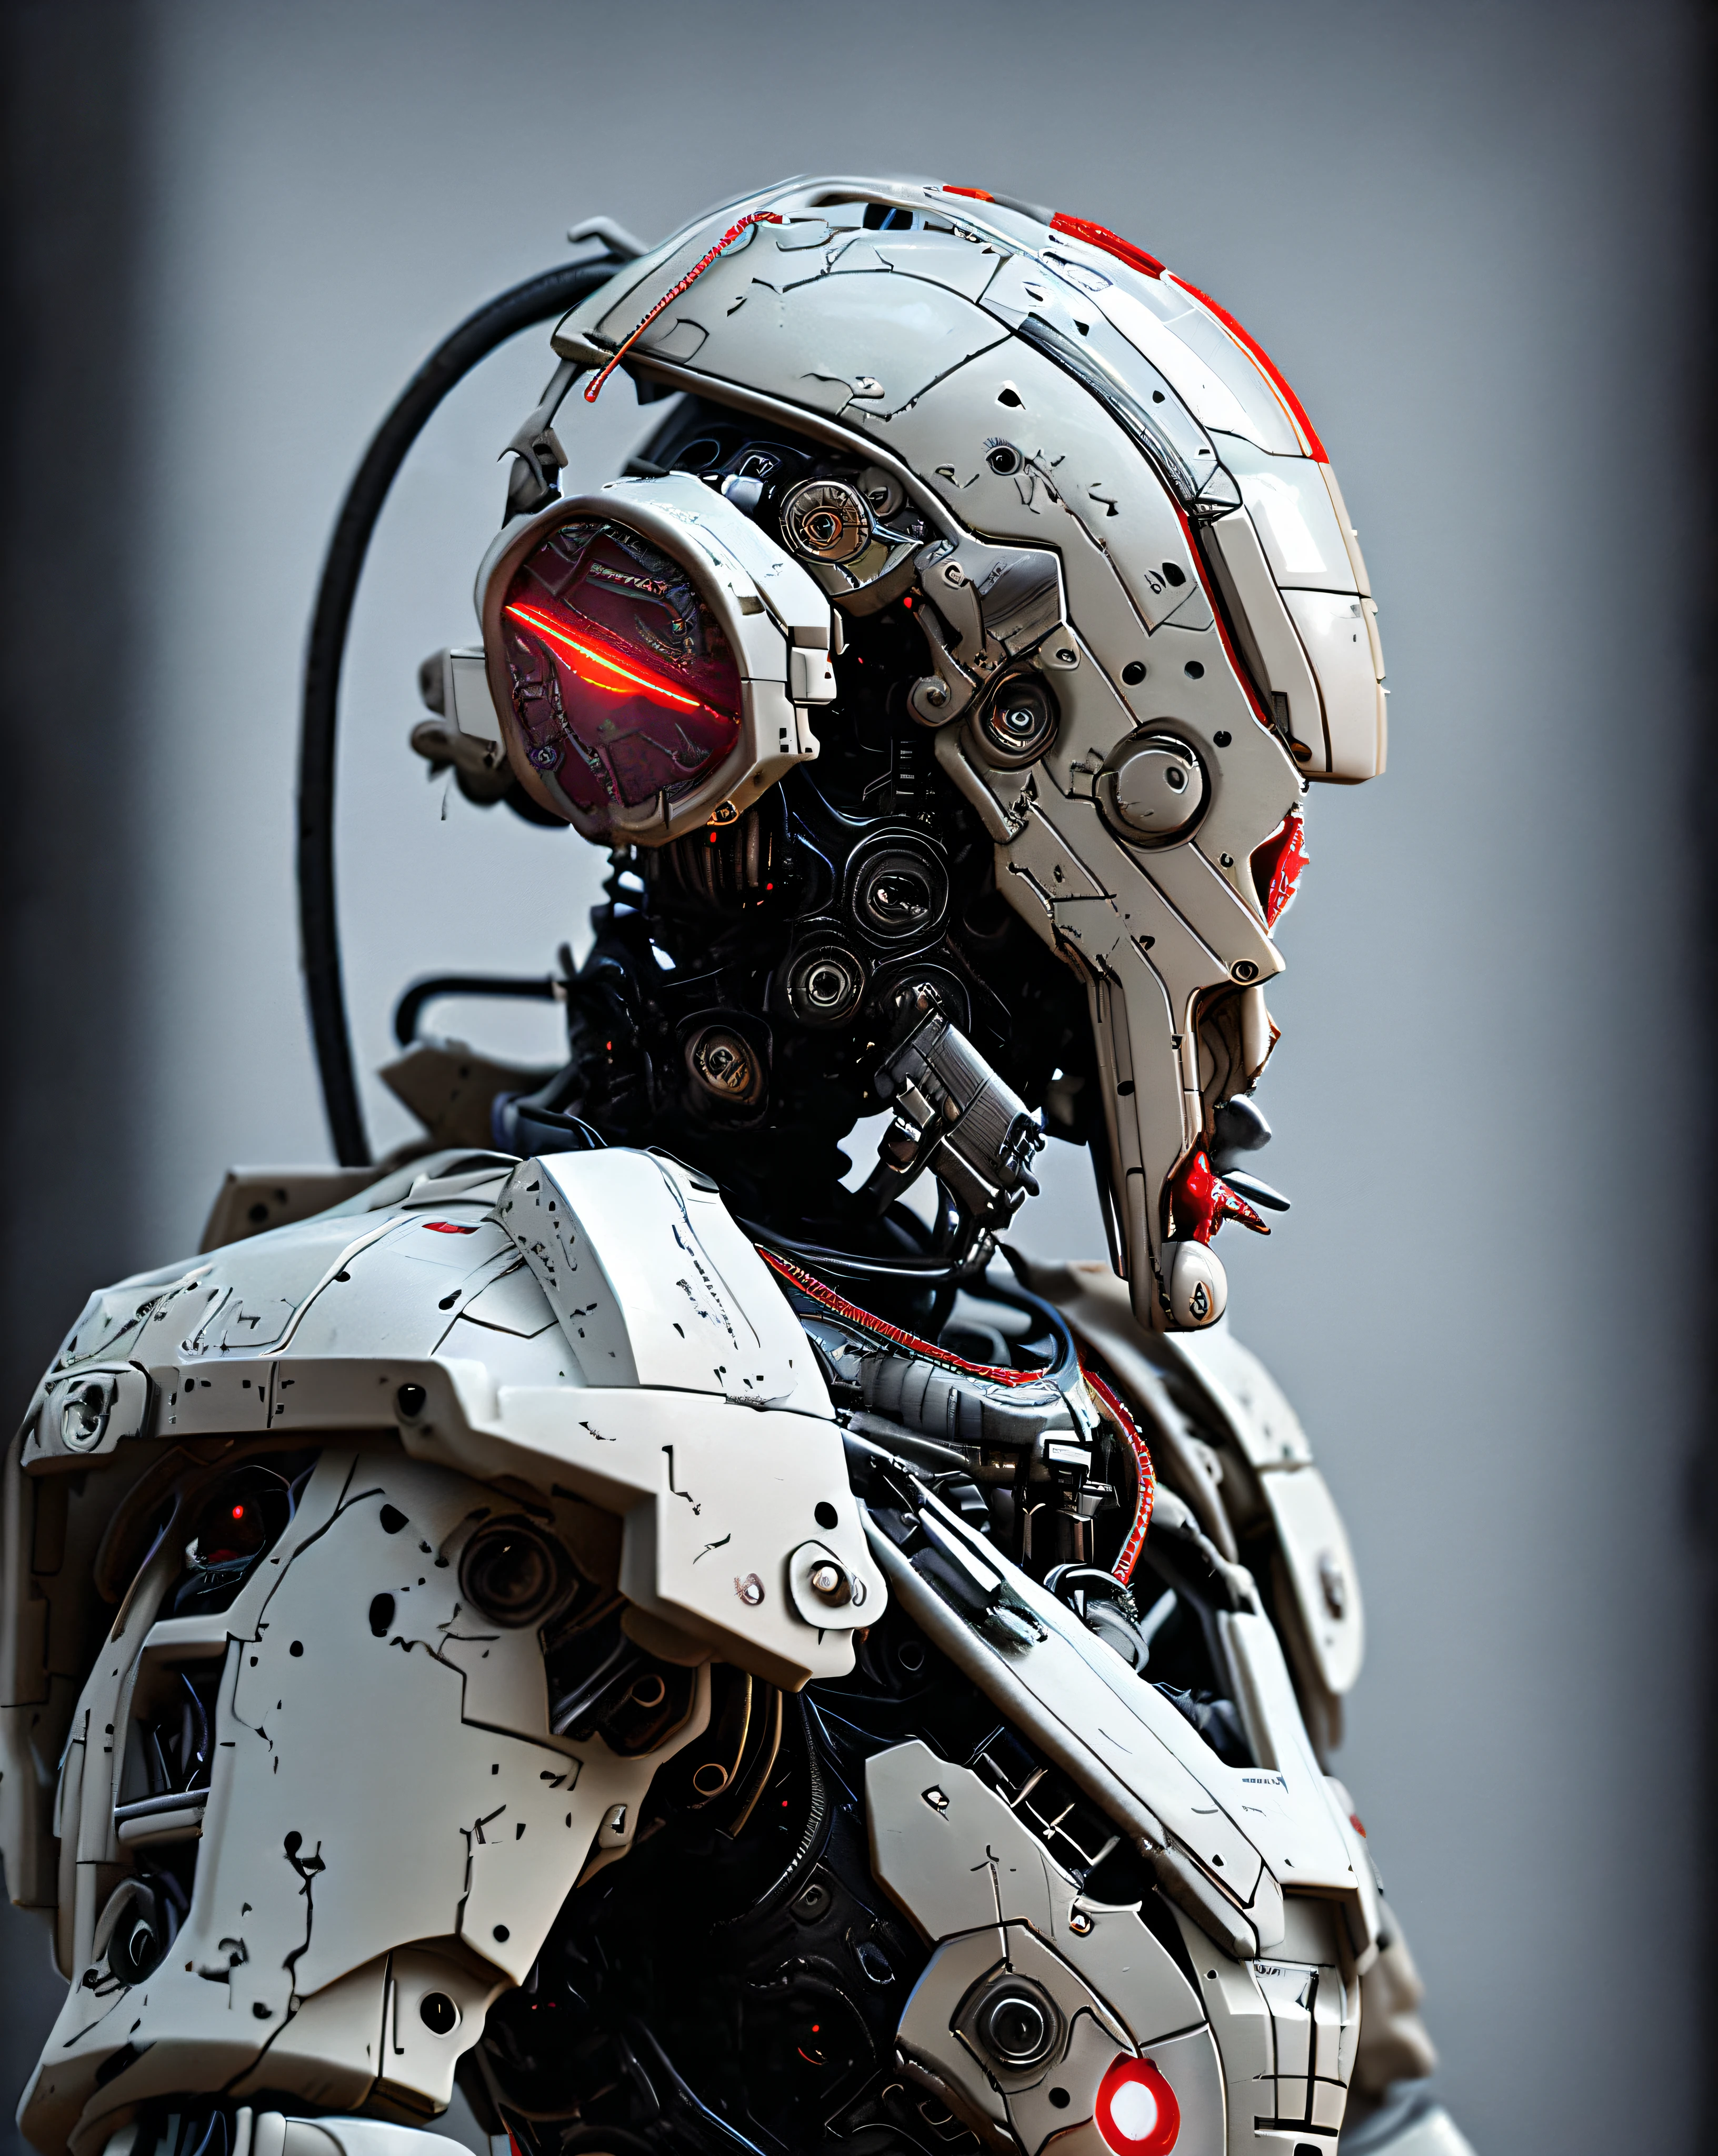 dvメカ, 85mm, F1.8, ロボットのポートレート, 暗い Matte Smooth Ceramic, 複雑なデザイン, 非常に詳細, 細かいディテール, 非常にシャープな線, 映画照明, リアルな写真, 細部までこだわった傑作, 暗い_ファンタジー, サイバーパンク ,(チェーンソー,チェーンソー man,赤:1.1),1人,機械の驚異, MARPAT ロボットの存在, サイバネティック軍事守護者, ボロボロのメカスーツを着て,複雑な,(スチール金属 [錆びた]),エレガント,明確な焦点, グレッグ・ルトコウスキー撮影, 柔らかな照明, 鮮やかな色彩, 傑作, ((通り)), カウボーイショット, ダイナミックなポーズ, 
アーバンサムライ_v0.3